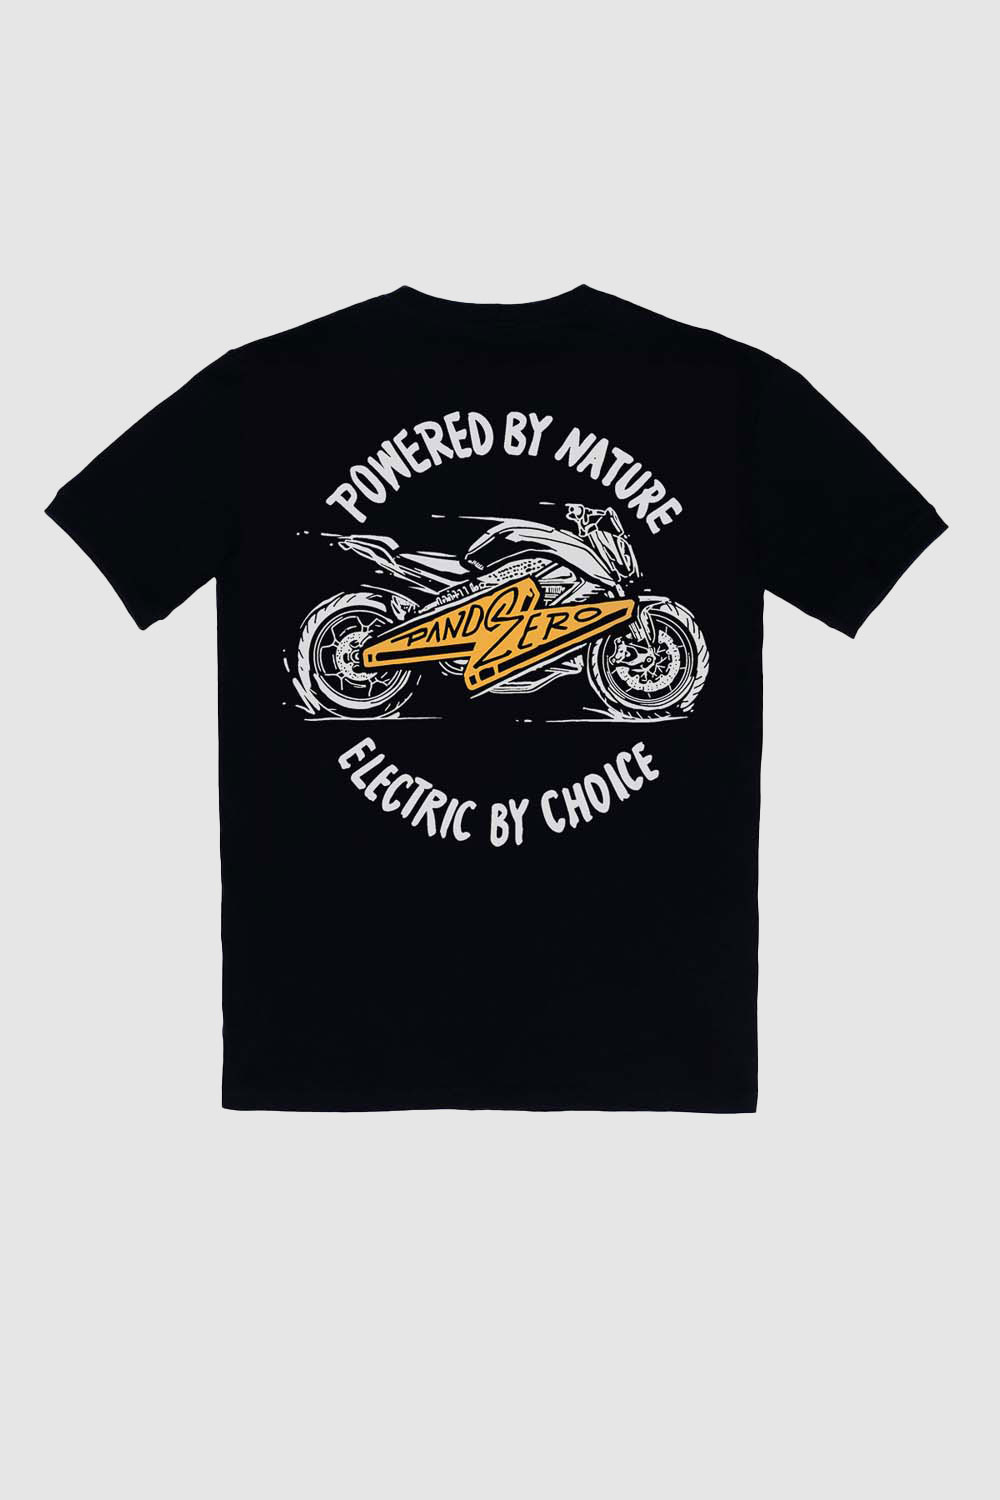 MIKE ZERO 1 - T-Shirt für Biker Regular Fit Limited Edition 1